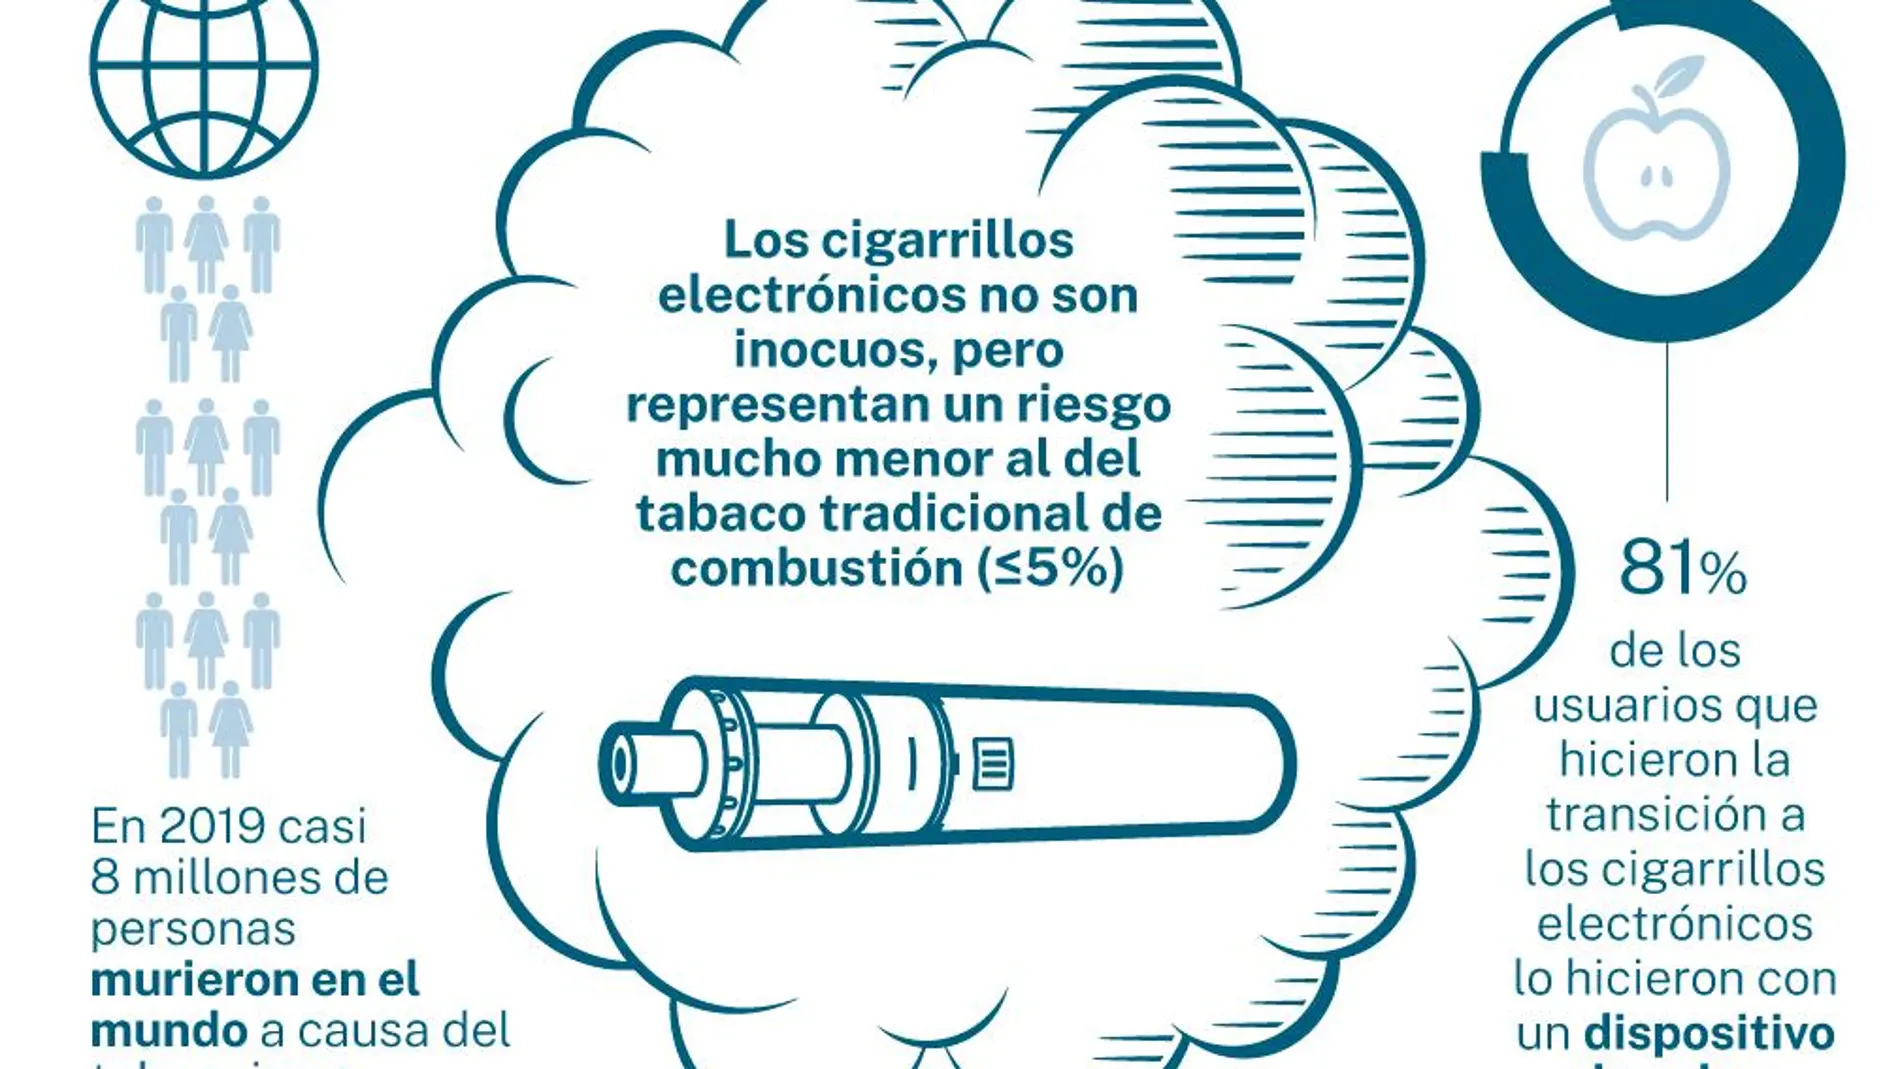 Datos sobre los efectos de los cigarrillos electrónicos frente al tabaco tradicional